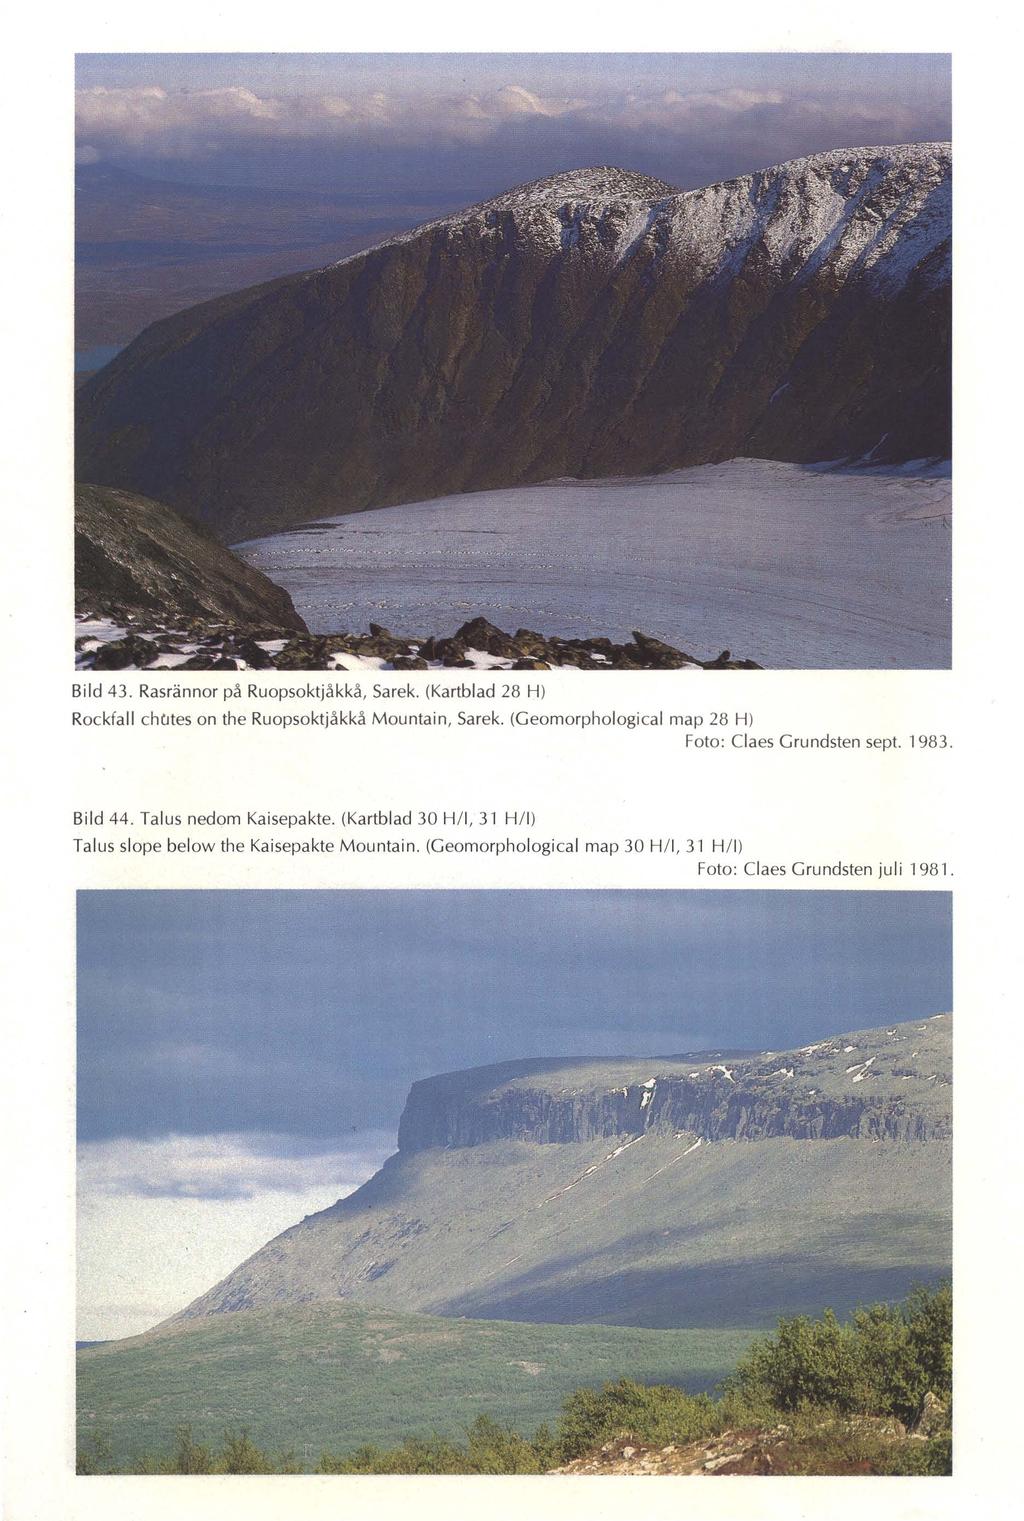 Bild 43. Rasrännor på Ruopsoktjåkkå, Sarek. (Kartblad 28 H) Rockfall chcjtes on the Ruopsoktjåkkå Mountain, Sarek. (Geomorphological map 28 H) Foto: Claes Grundsten sept.